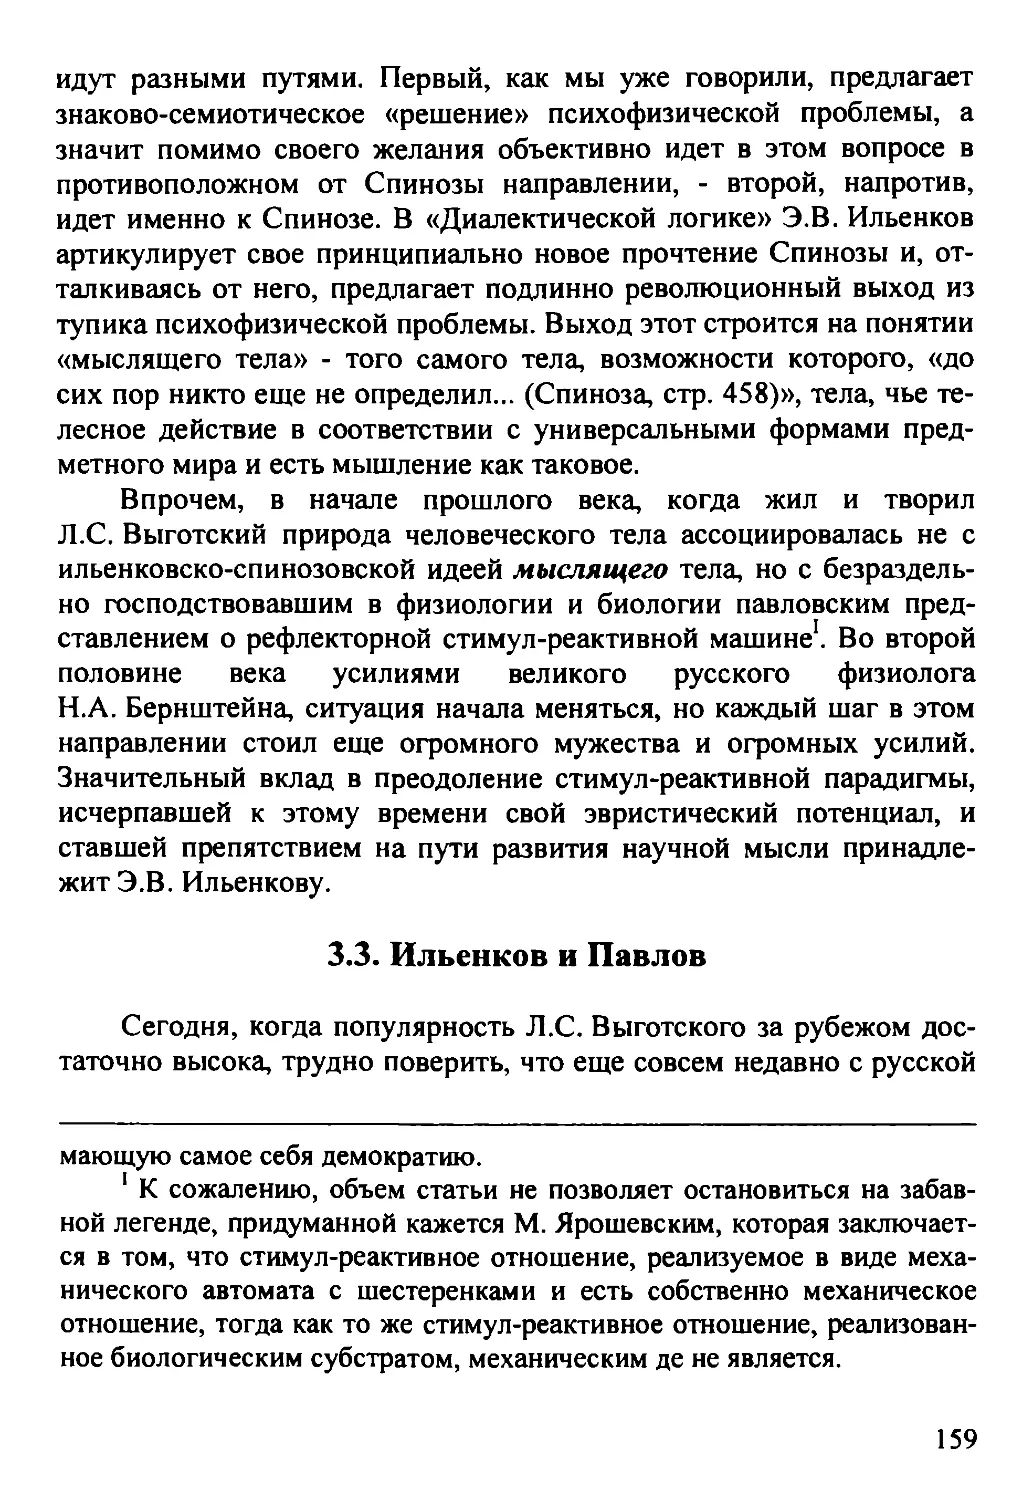 3.3. Ильенков и Павлов